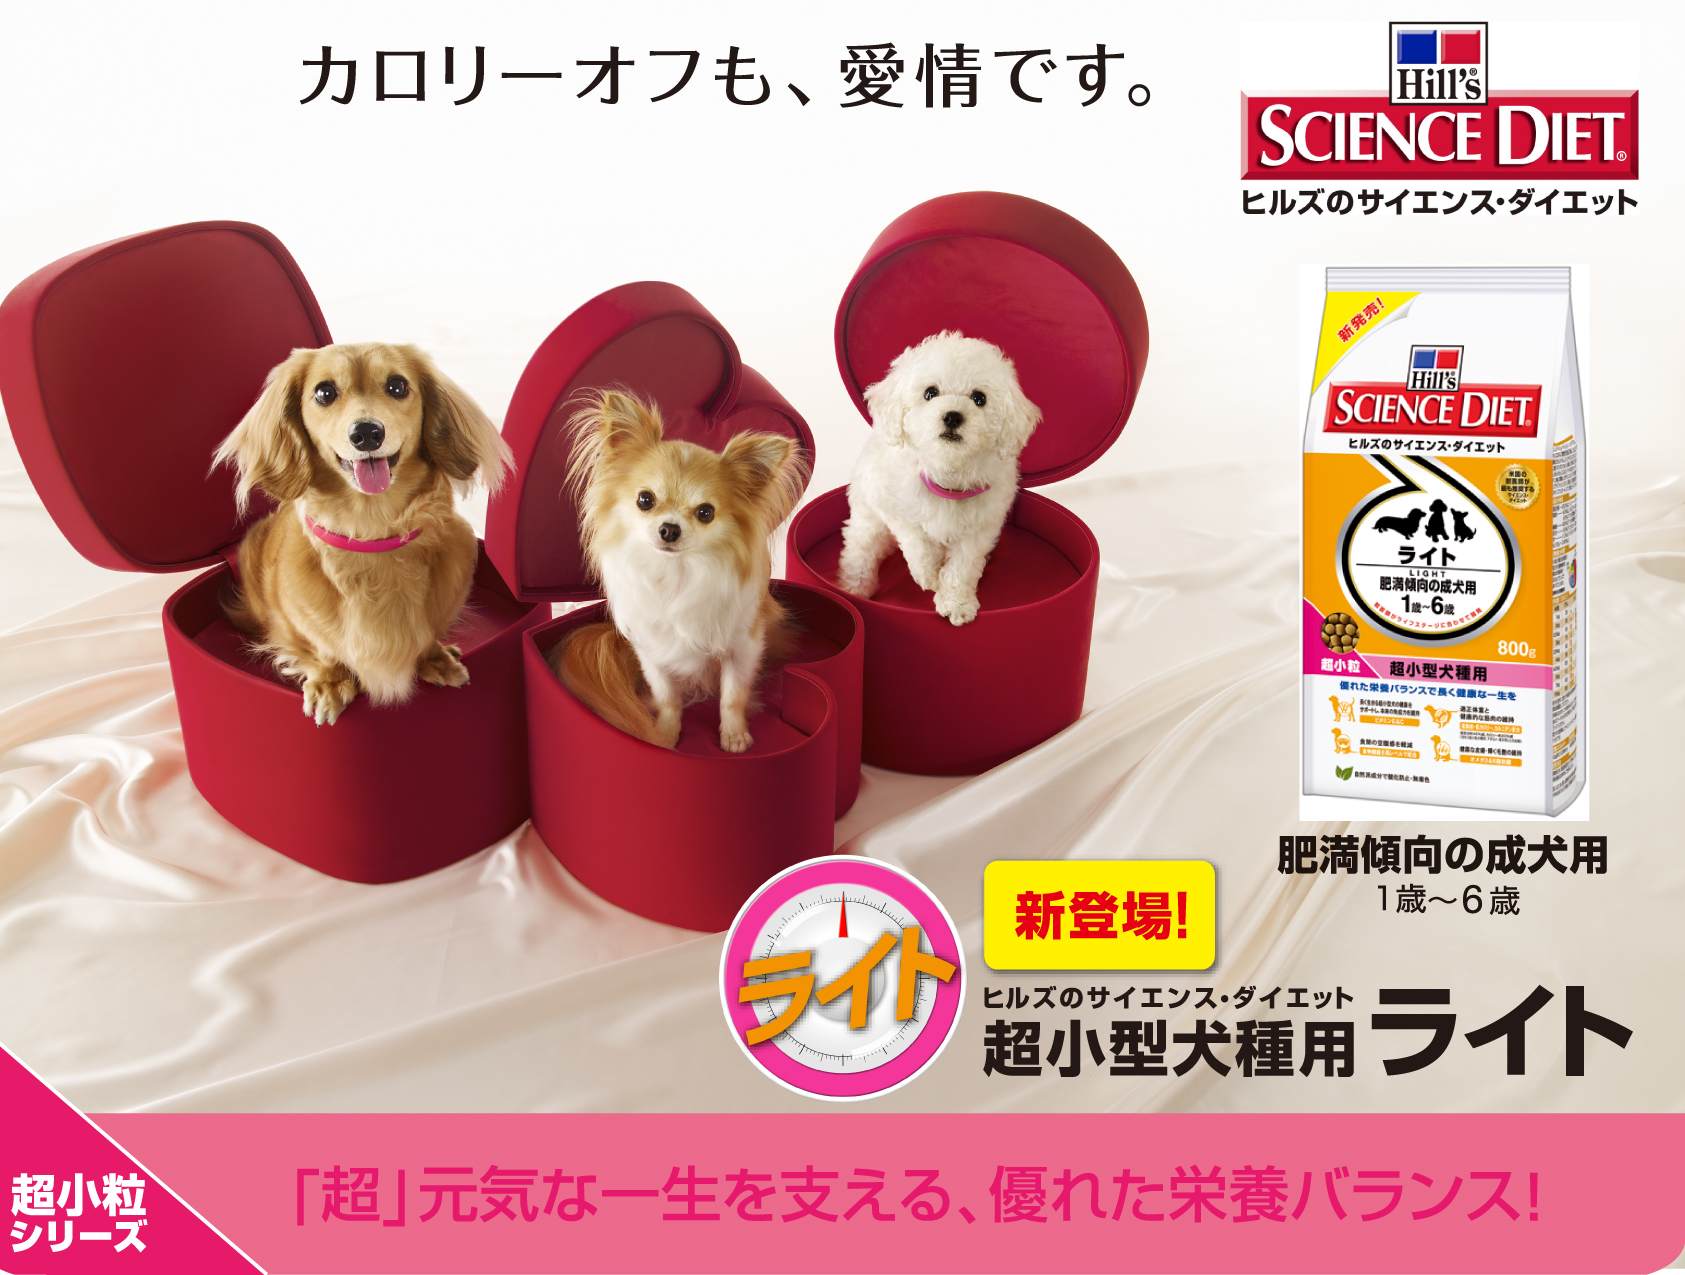 新製品 サイエンス ダイエット 超小型犬種用に ライト が新登場 日本ヒルズ コルゲート株式会社のプレスリリース